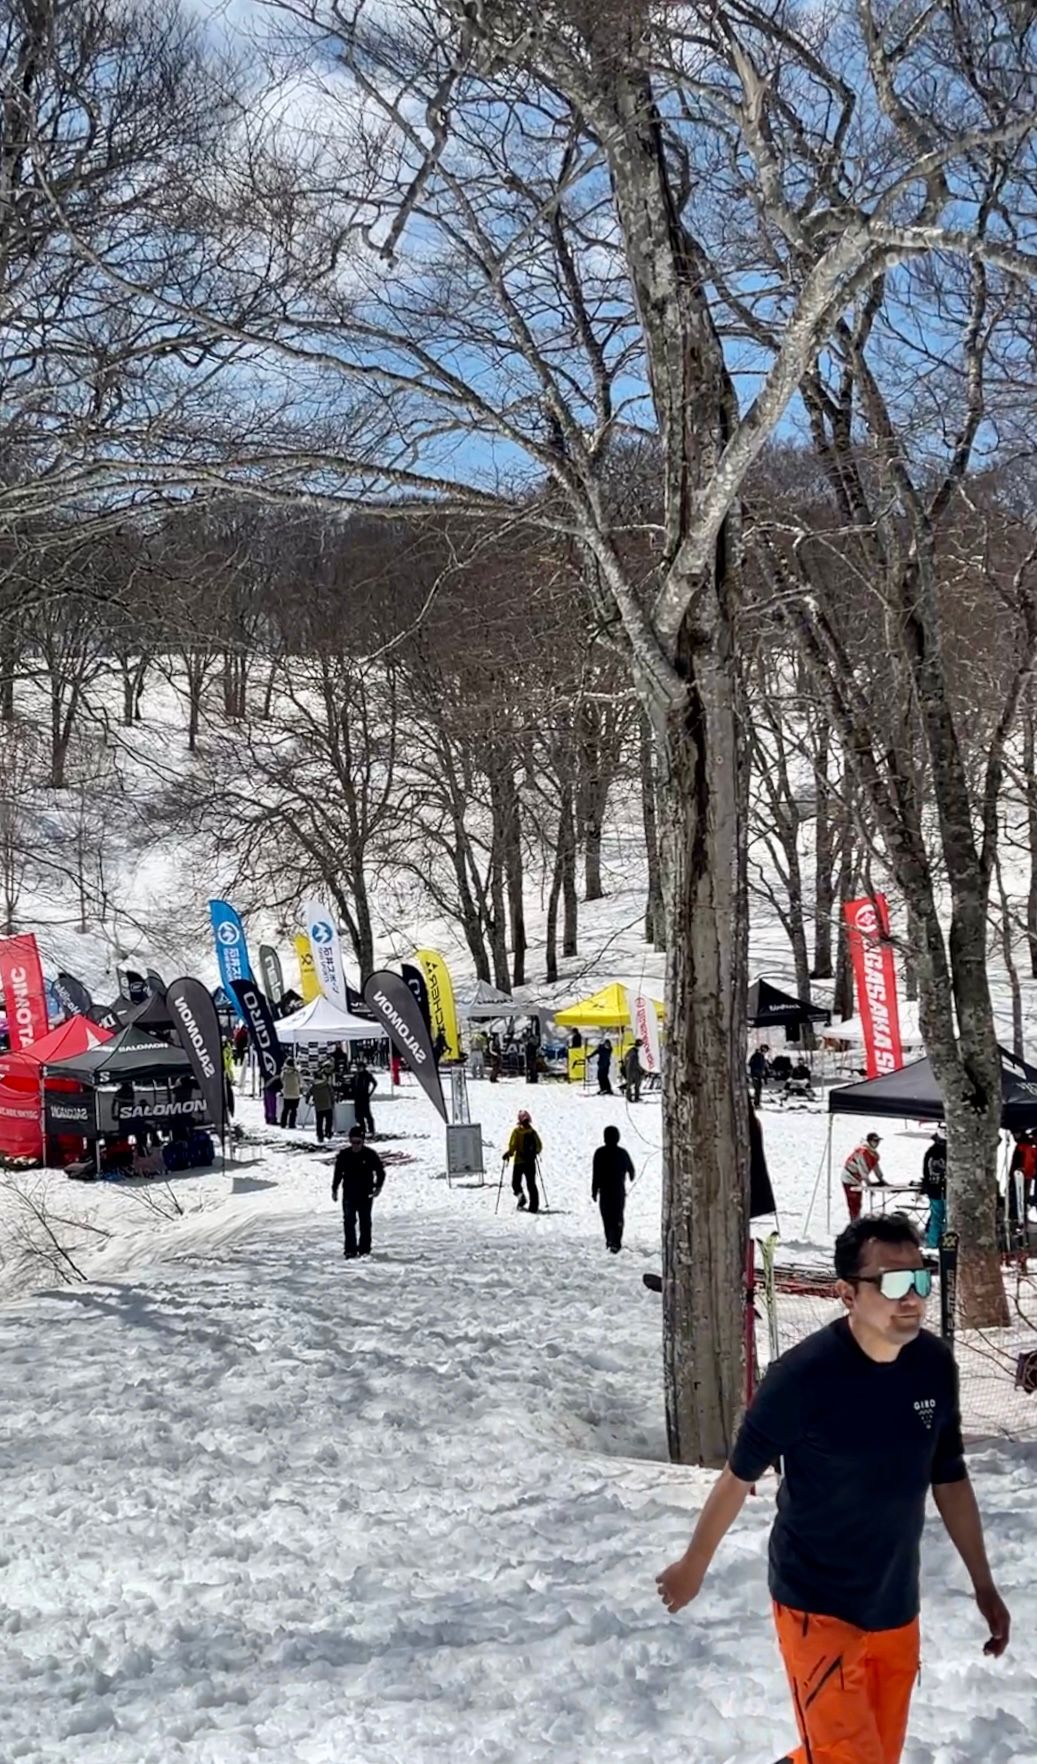 nozawa board and ski demo area 